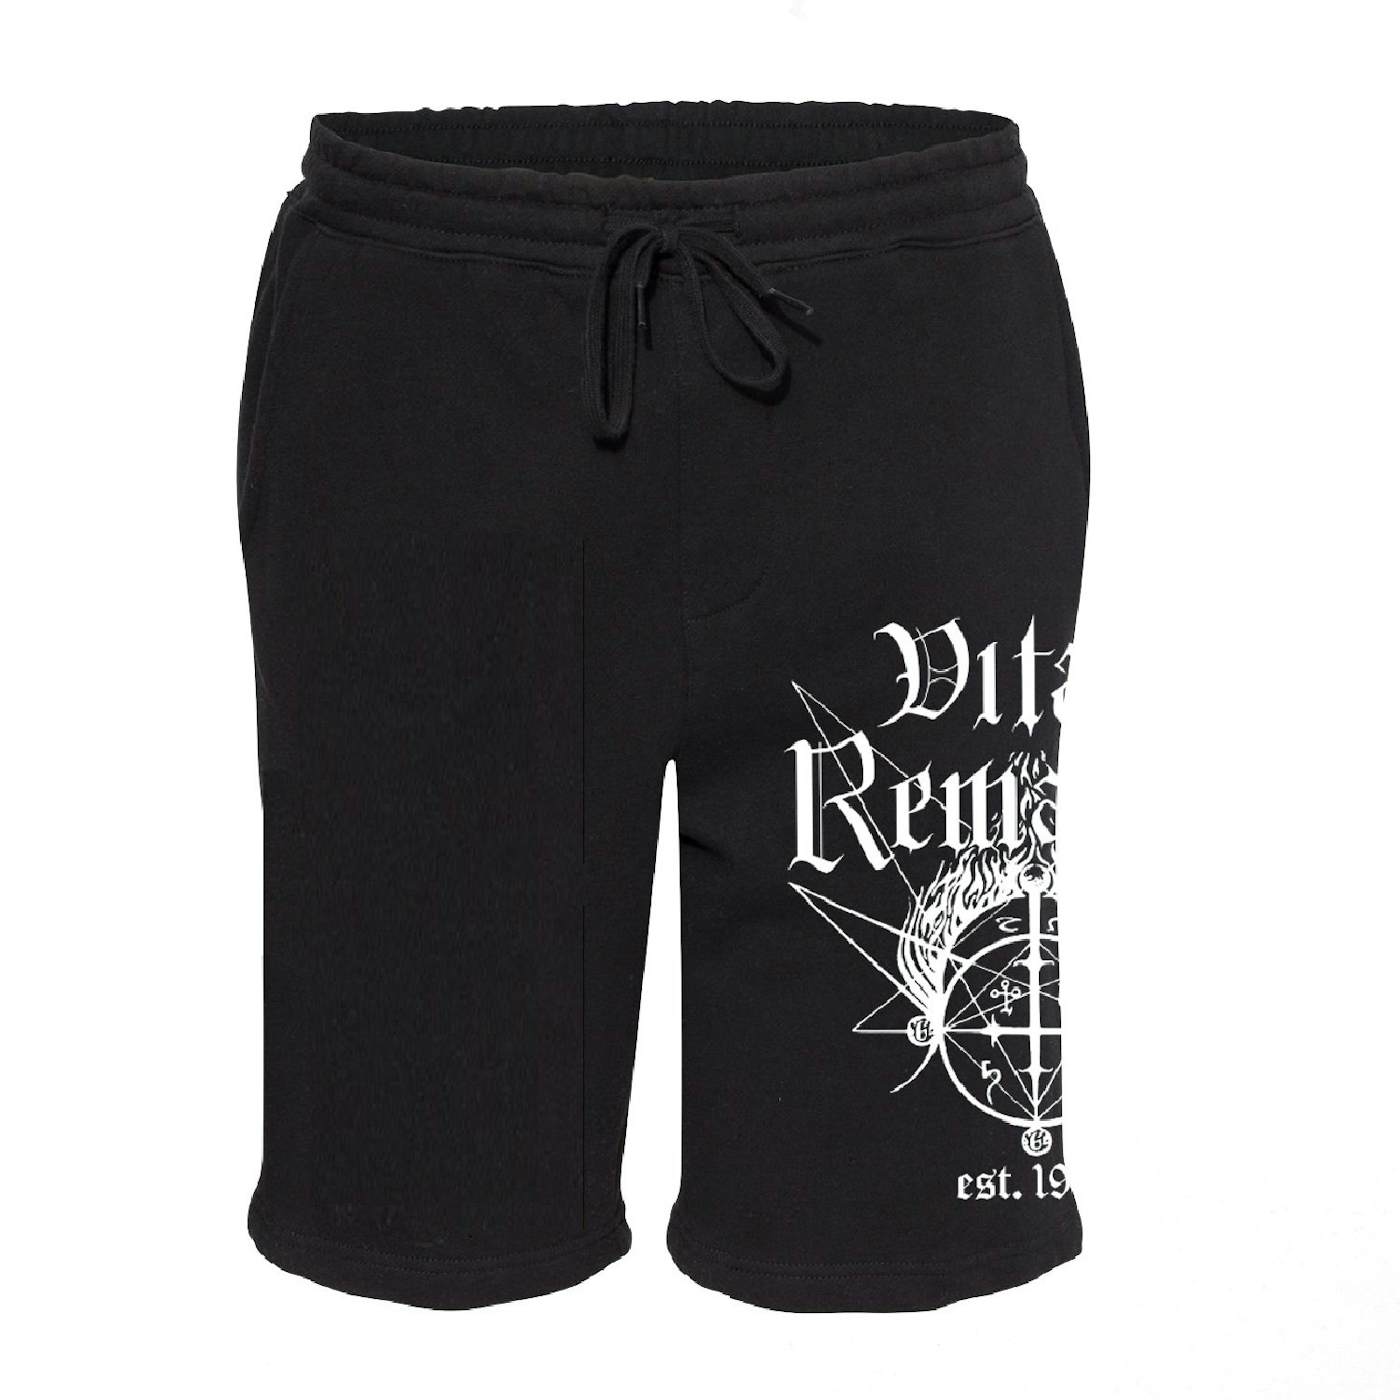 Vital Remains "Logo" Shorts